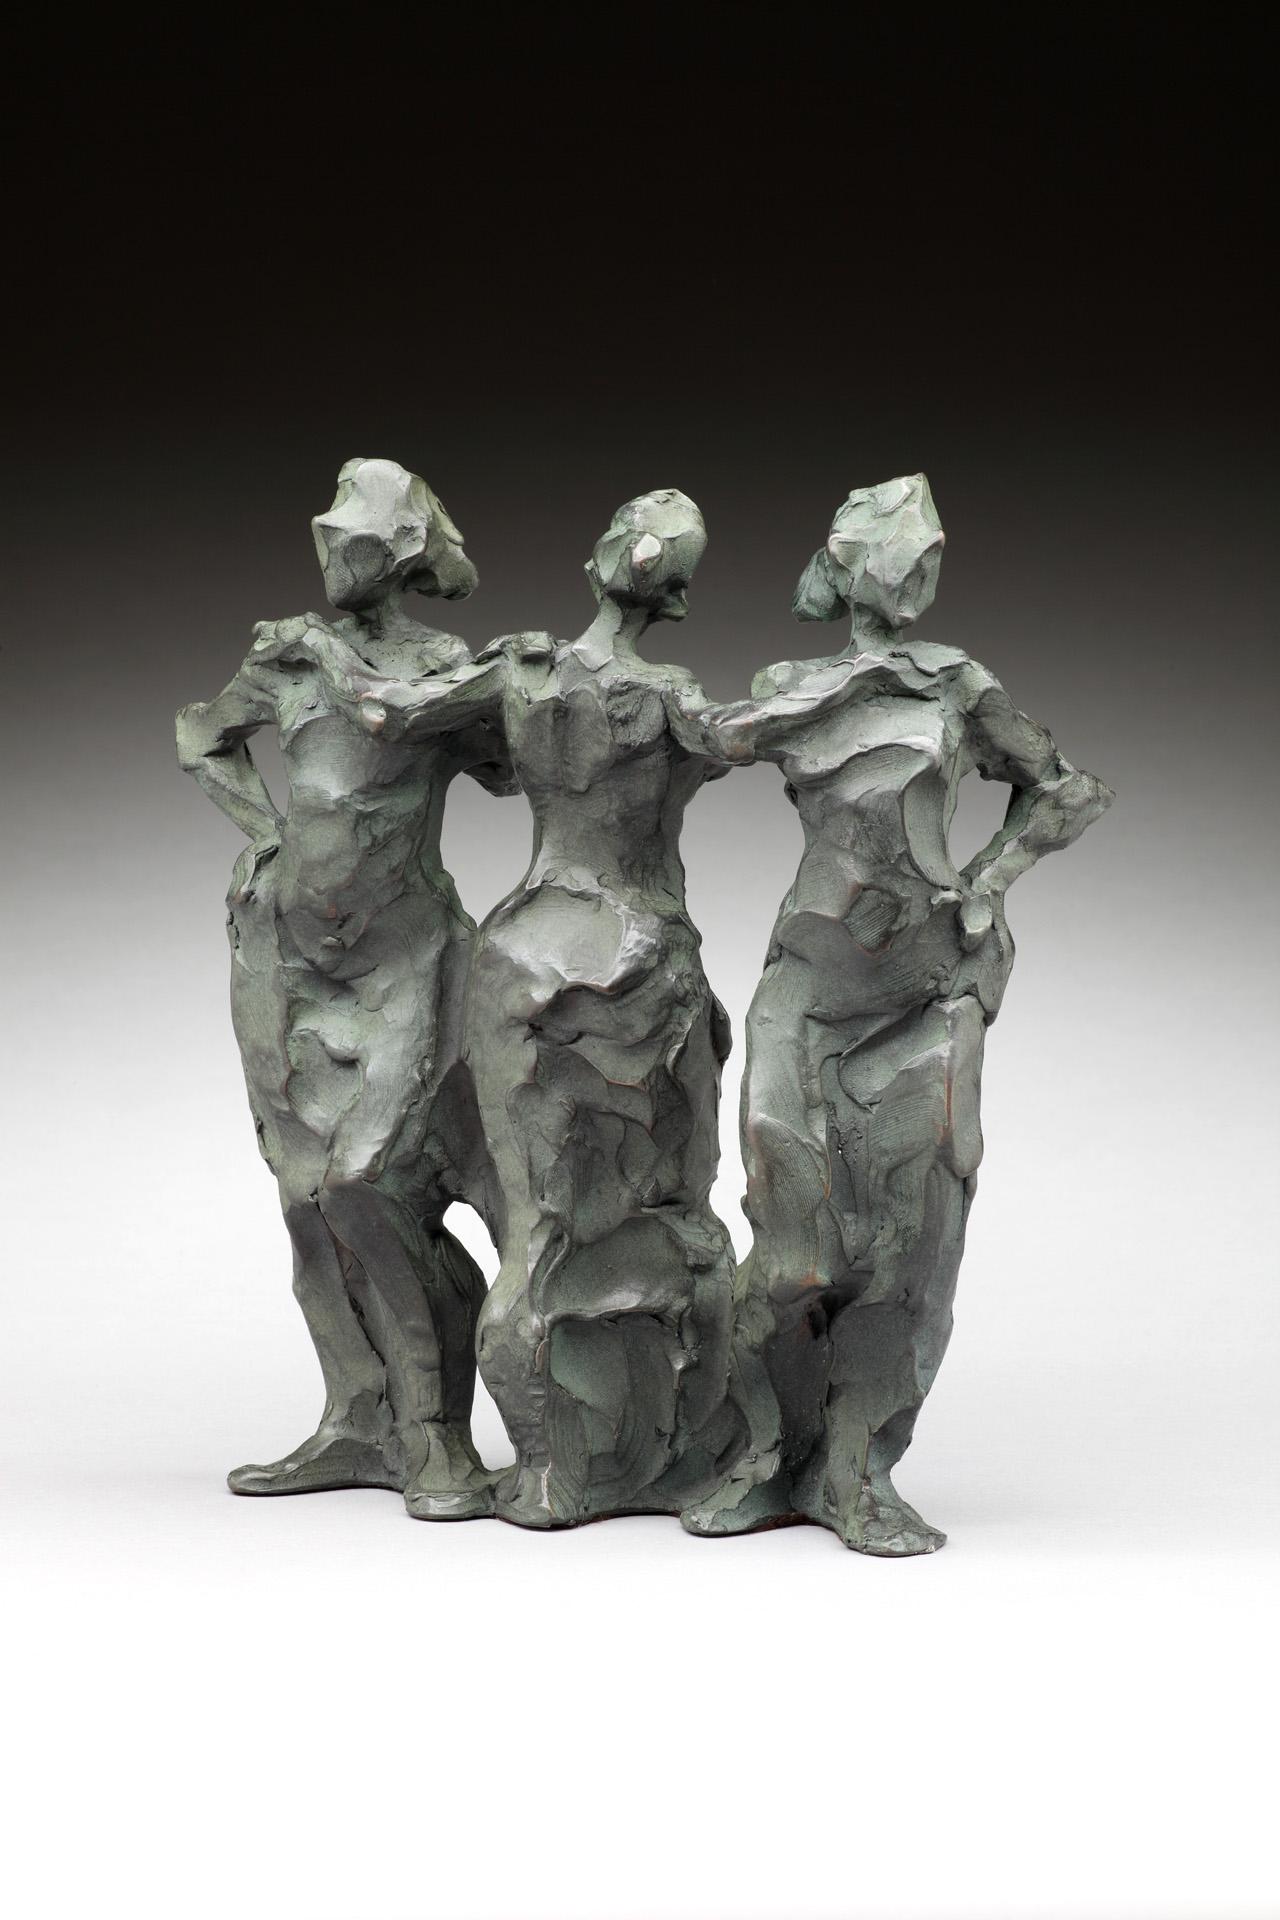 Three Graces - Sculpture by Jane DeDecker